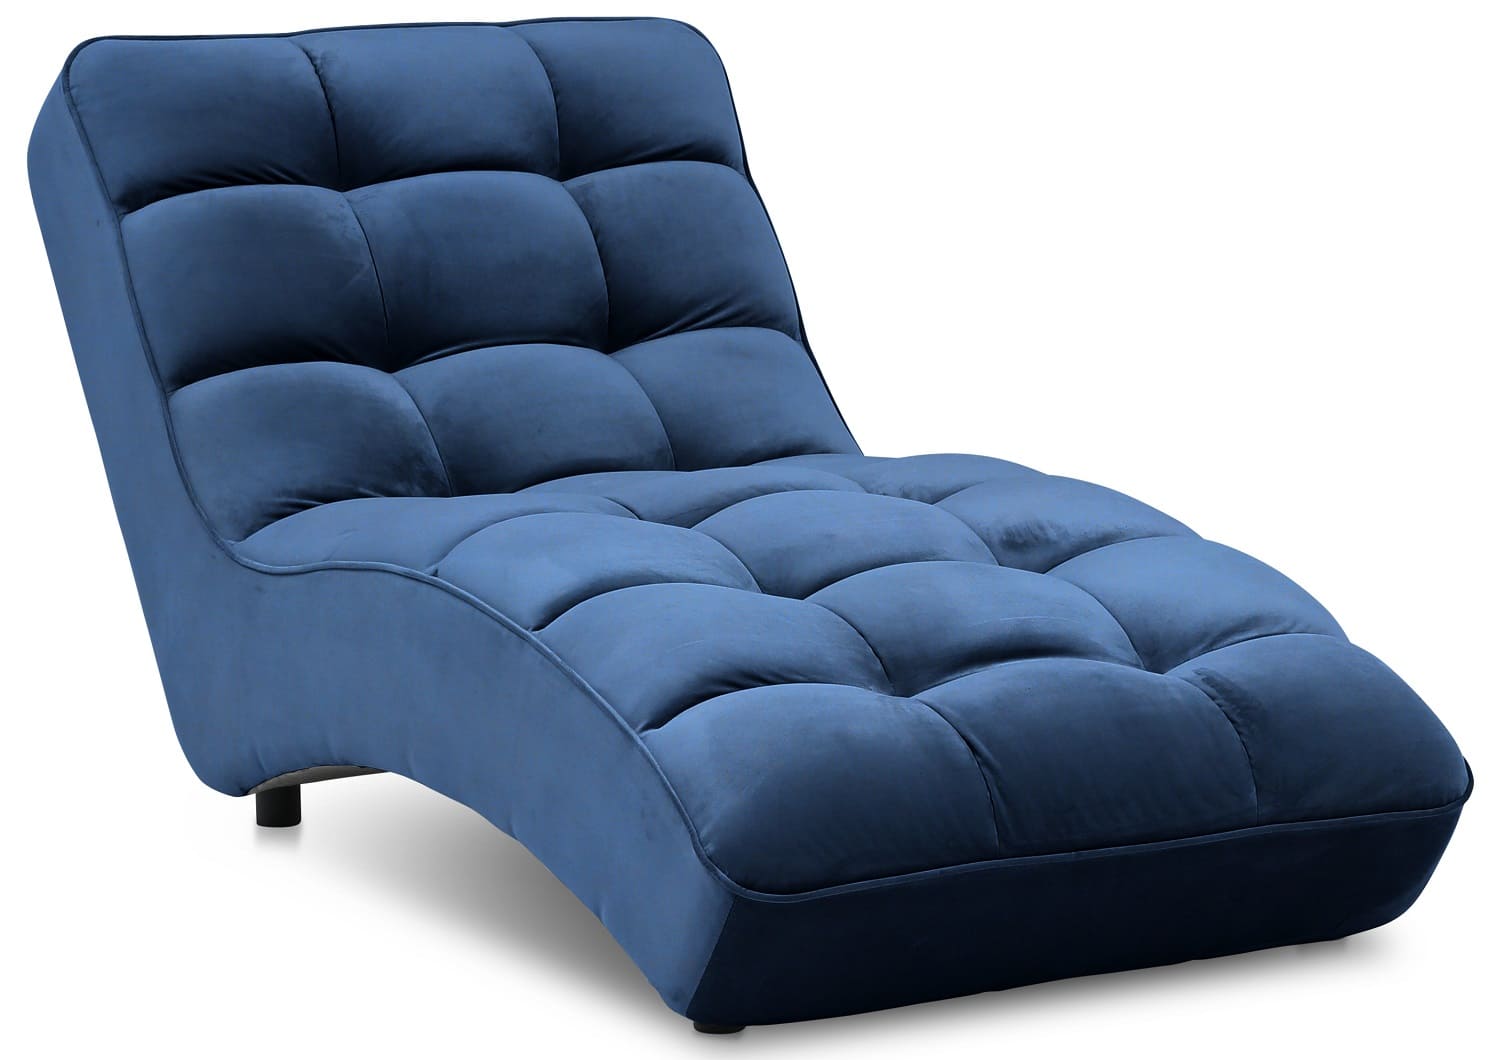 Chaise longue de relaxation en velours matelassé bleu nuit